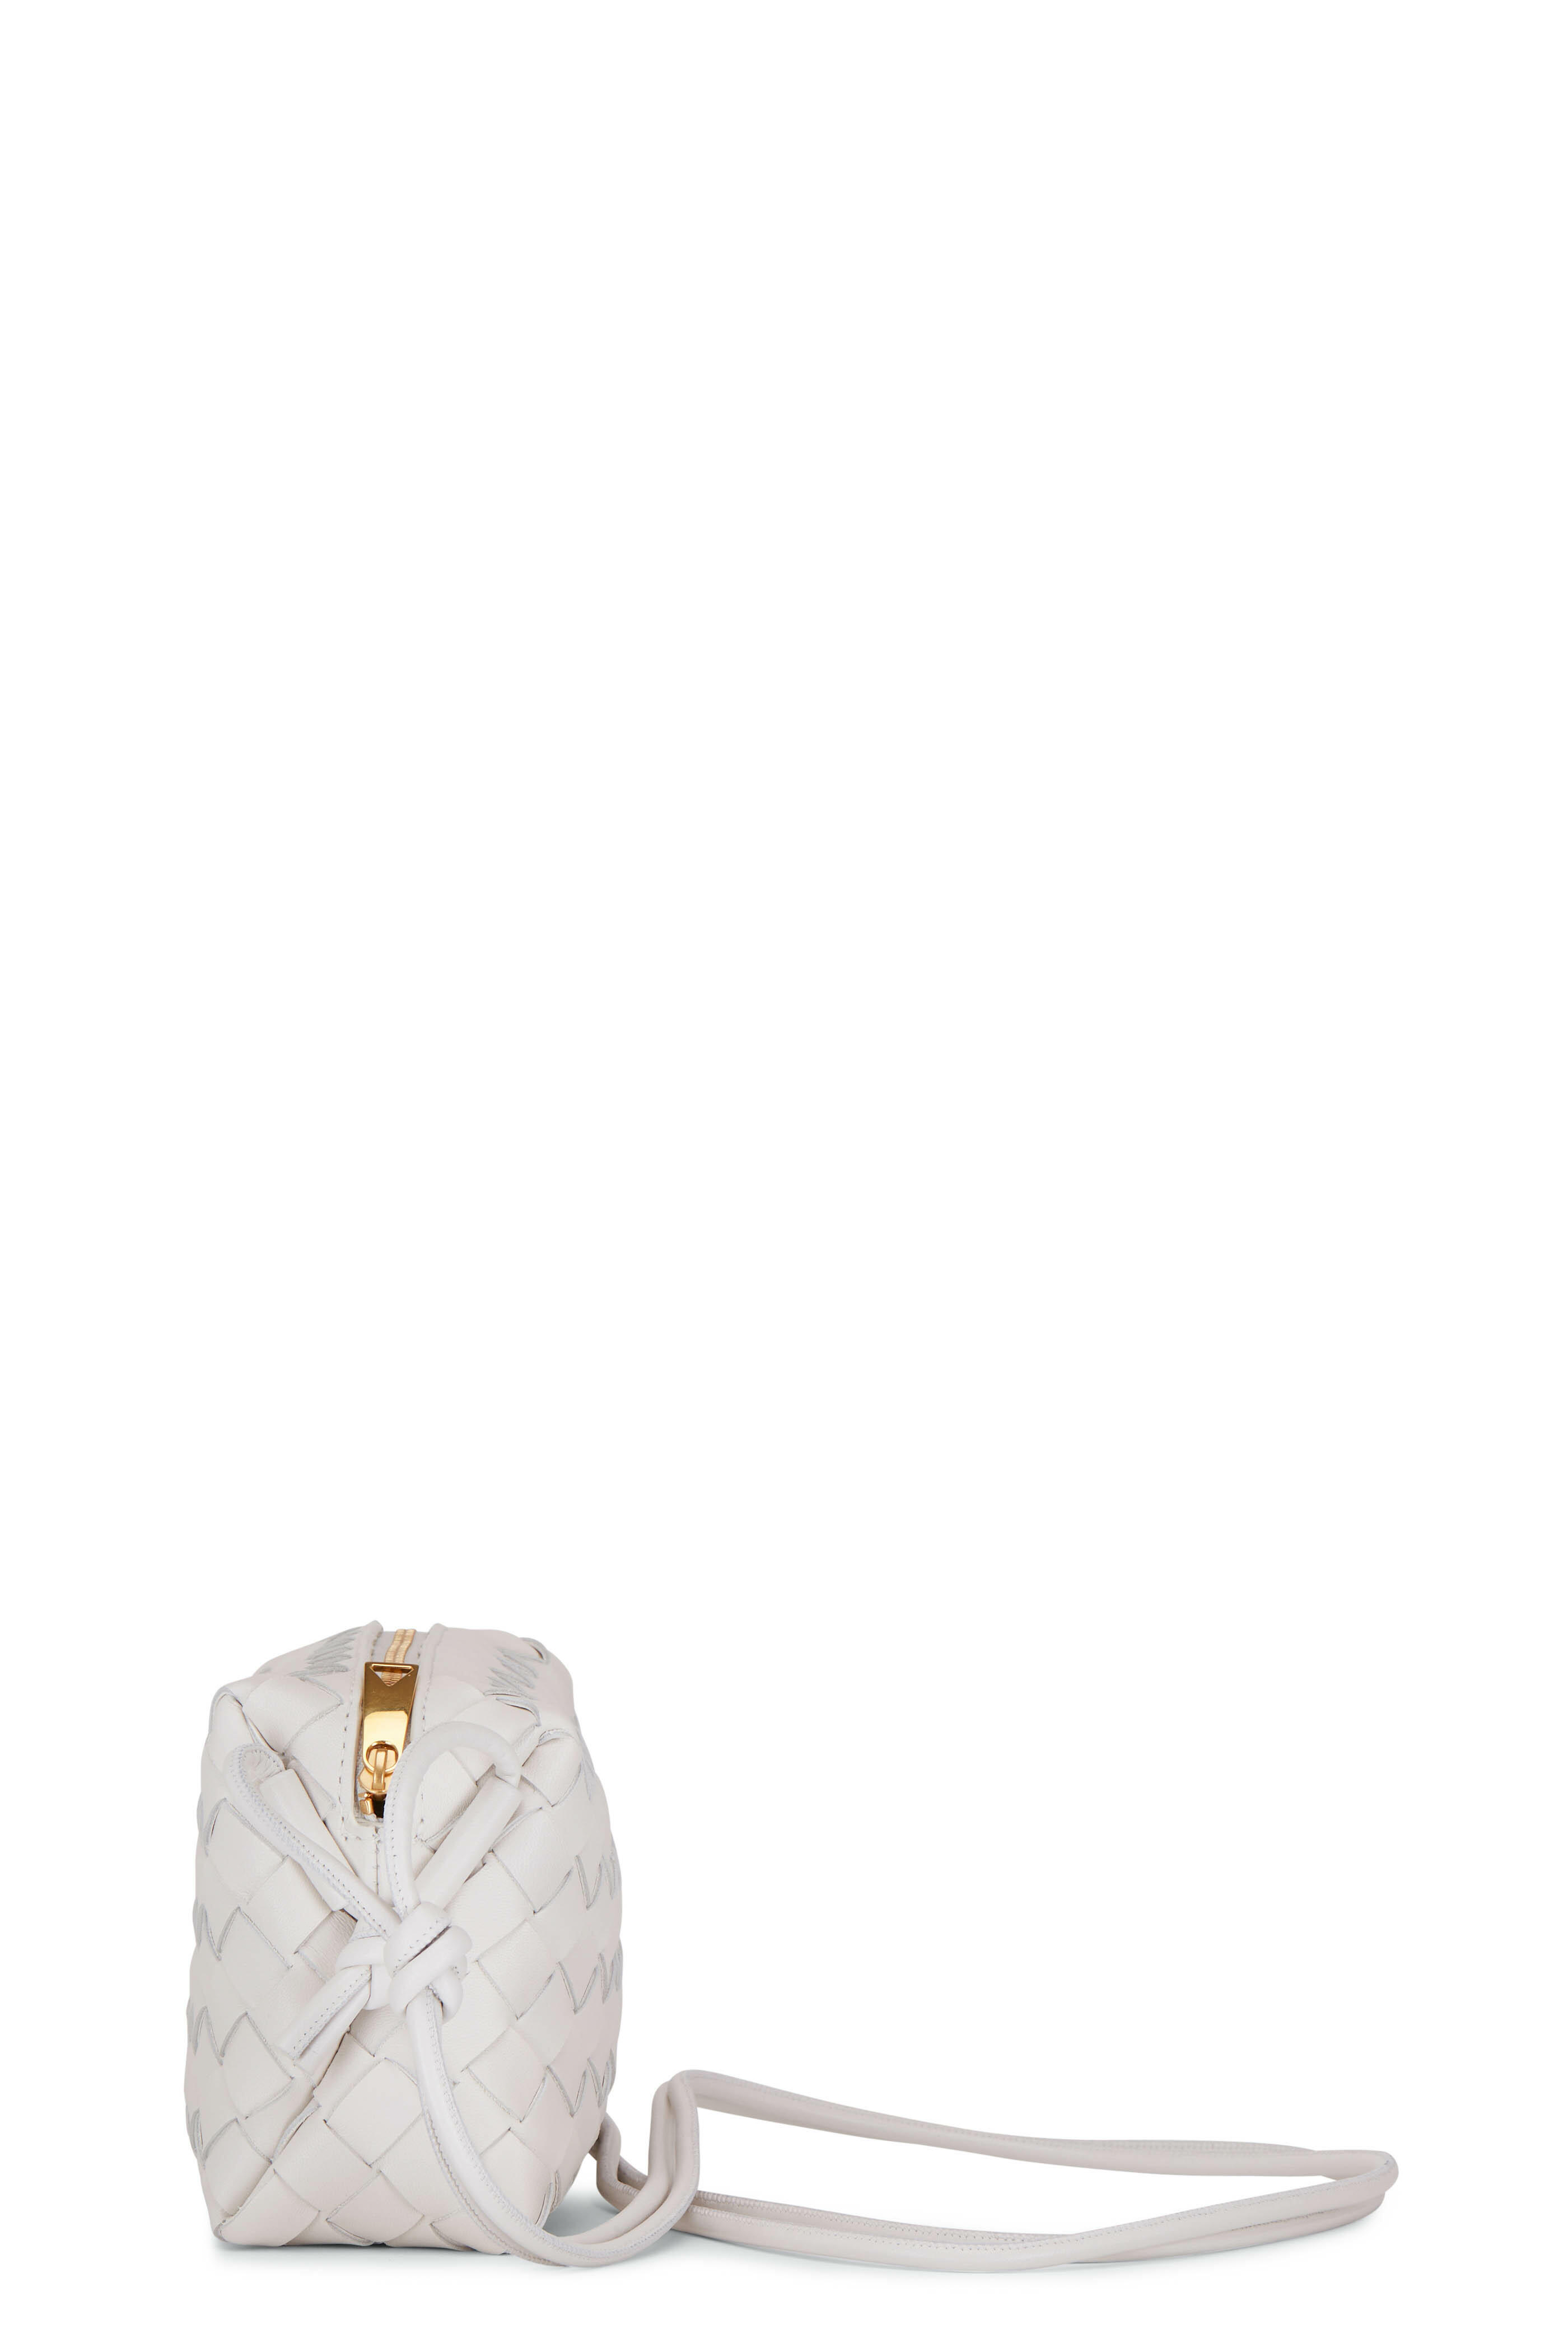 Bottega Veneta - Mini White Loop Shoulder Bag | Mitchell Stores